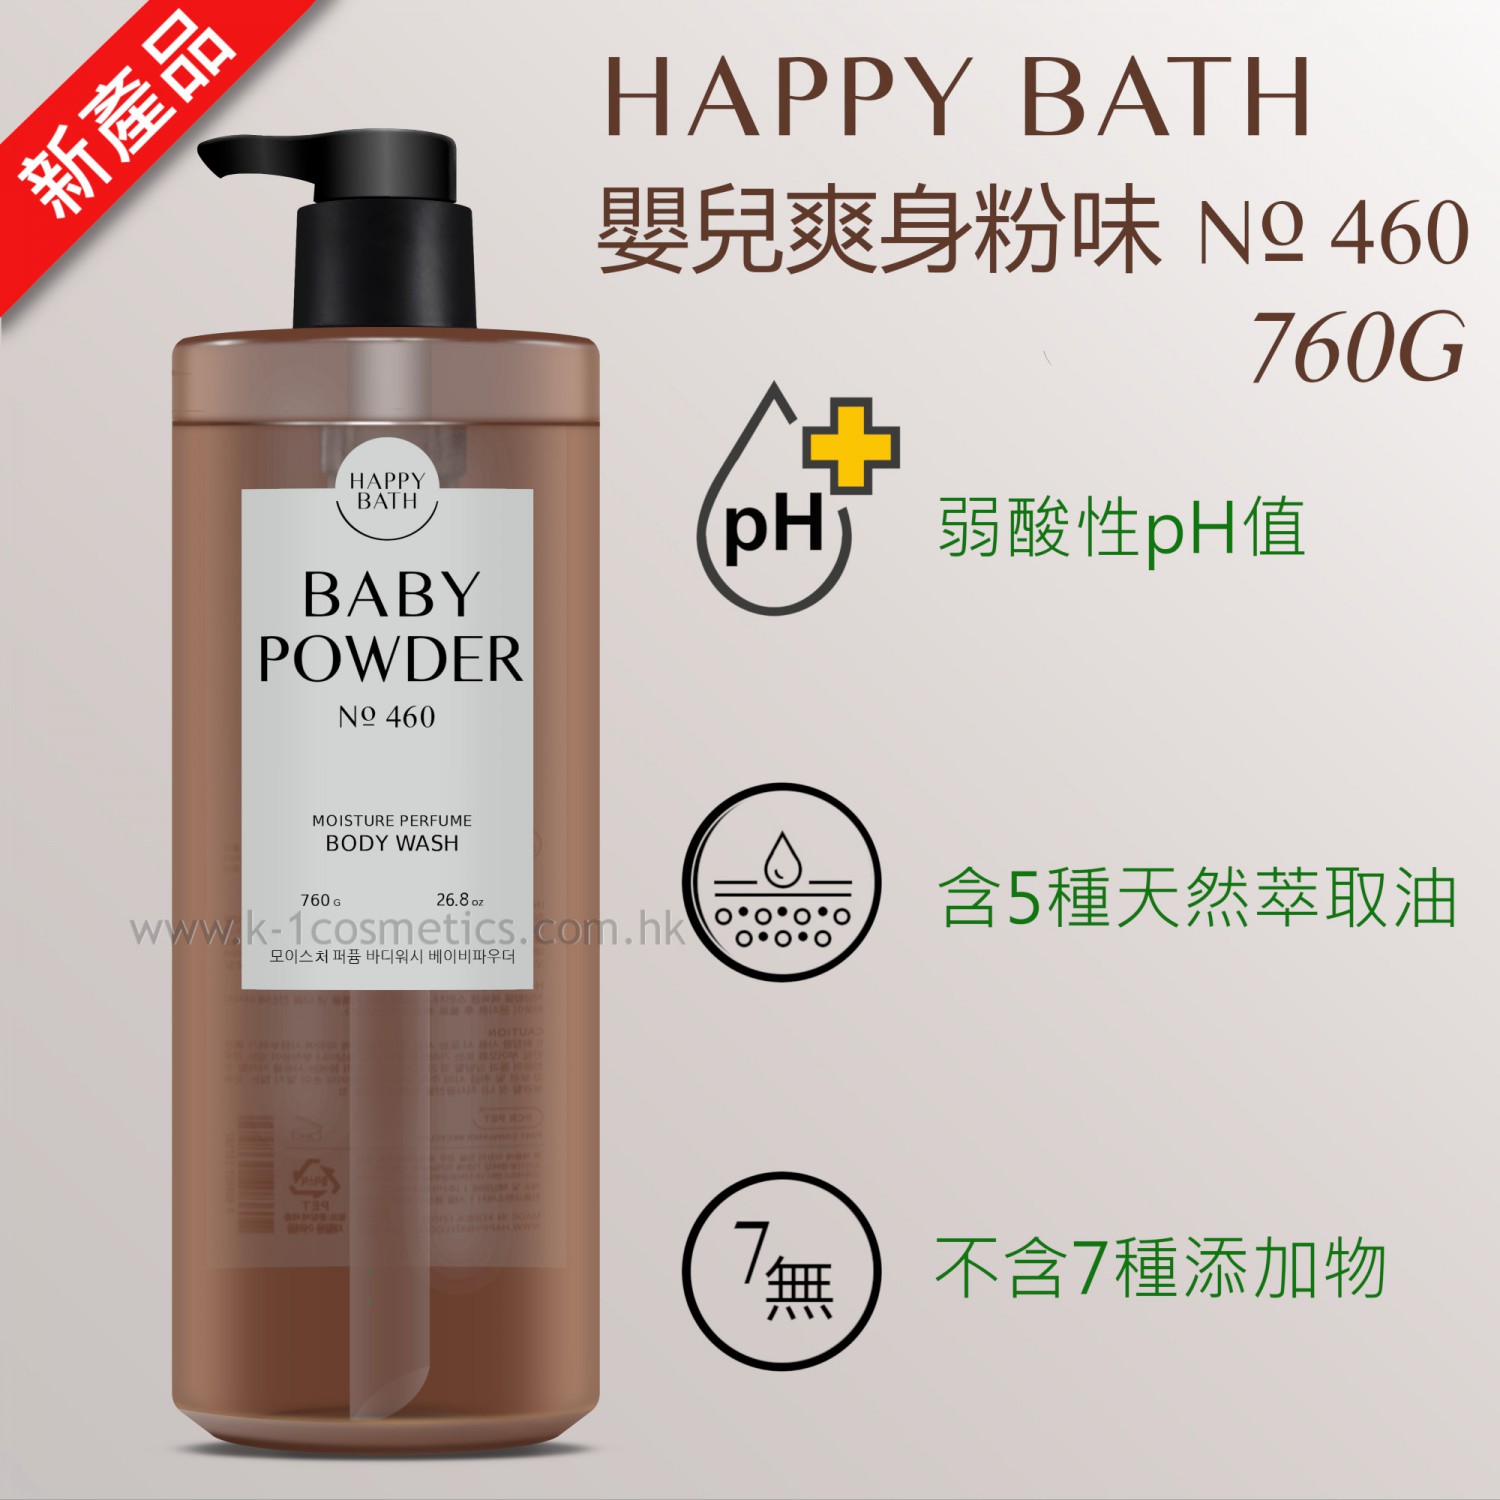 Happy Bath 嬰兒爽身粉沐浴露 No. 460 (760g)